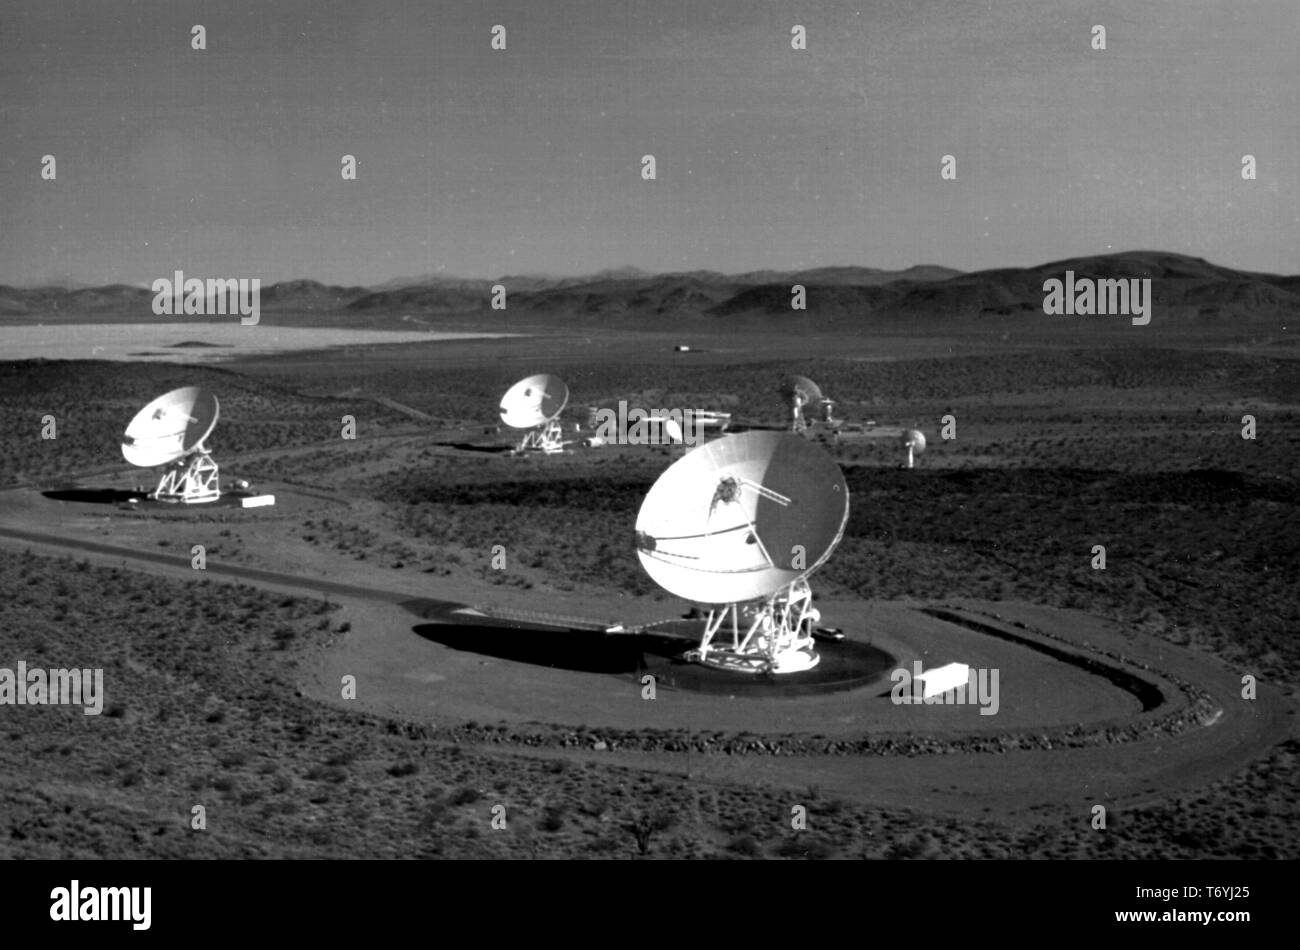 Fotografia del Deep Space Network (DSN) Fascio antenne a guida d'onda a Goldstone Deep Space Communications Complex, Deserto Mojave, California, 1990. Immagine cortesia Nazionale Aeronautica e Spaziale Administration (NASA). () Foto Stock